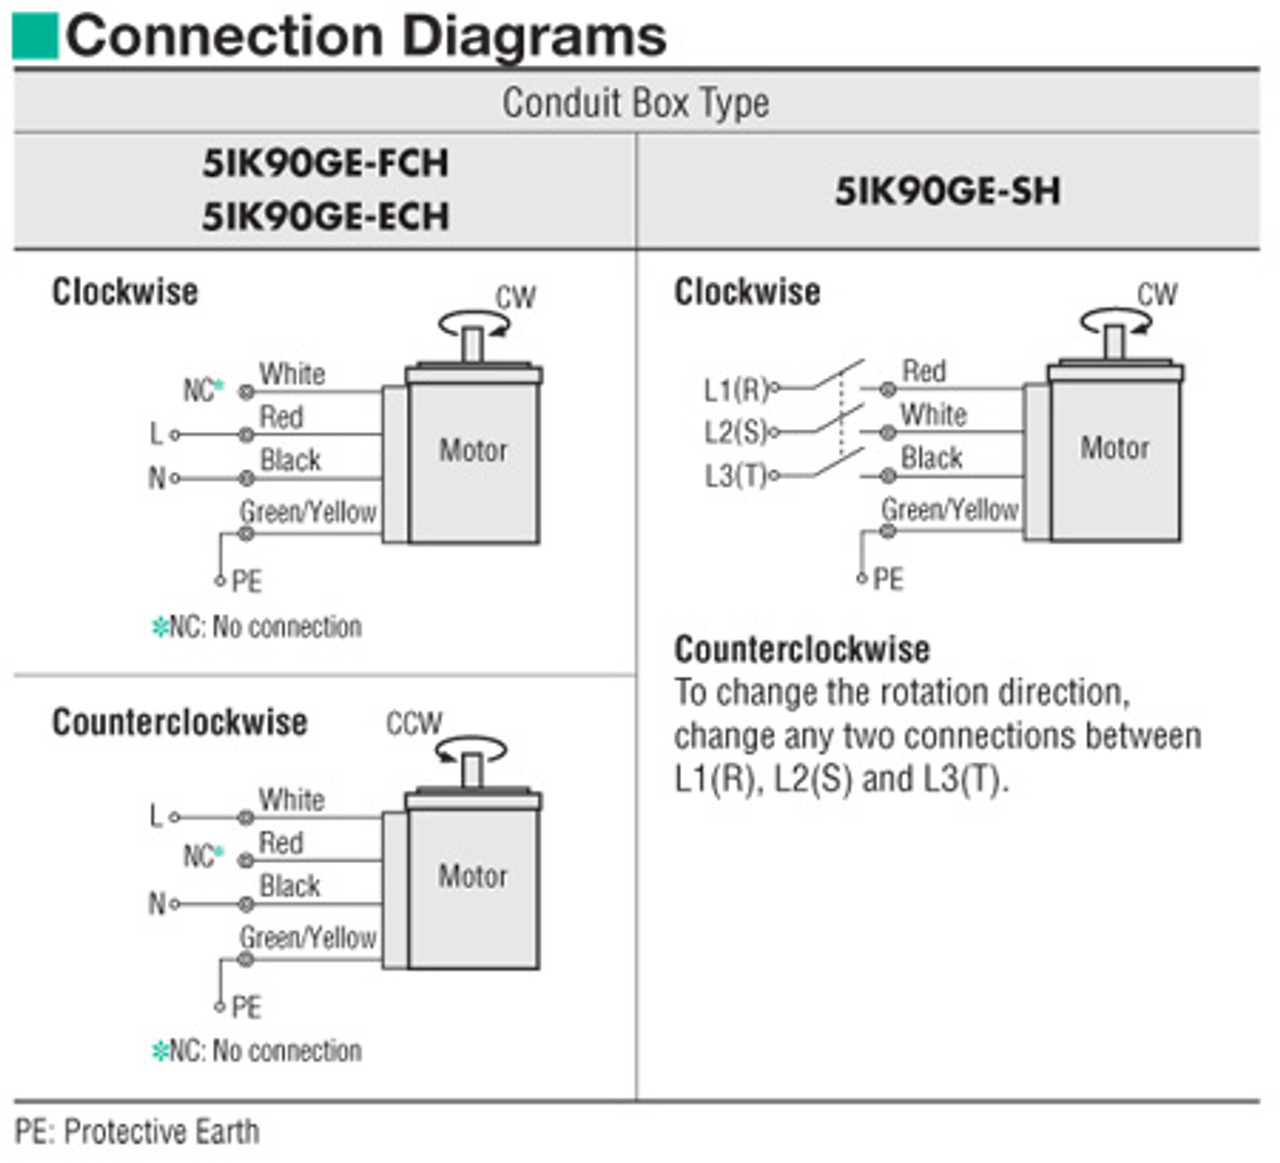 5IK90GE-FCH / 5GE75SA - Connection